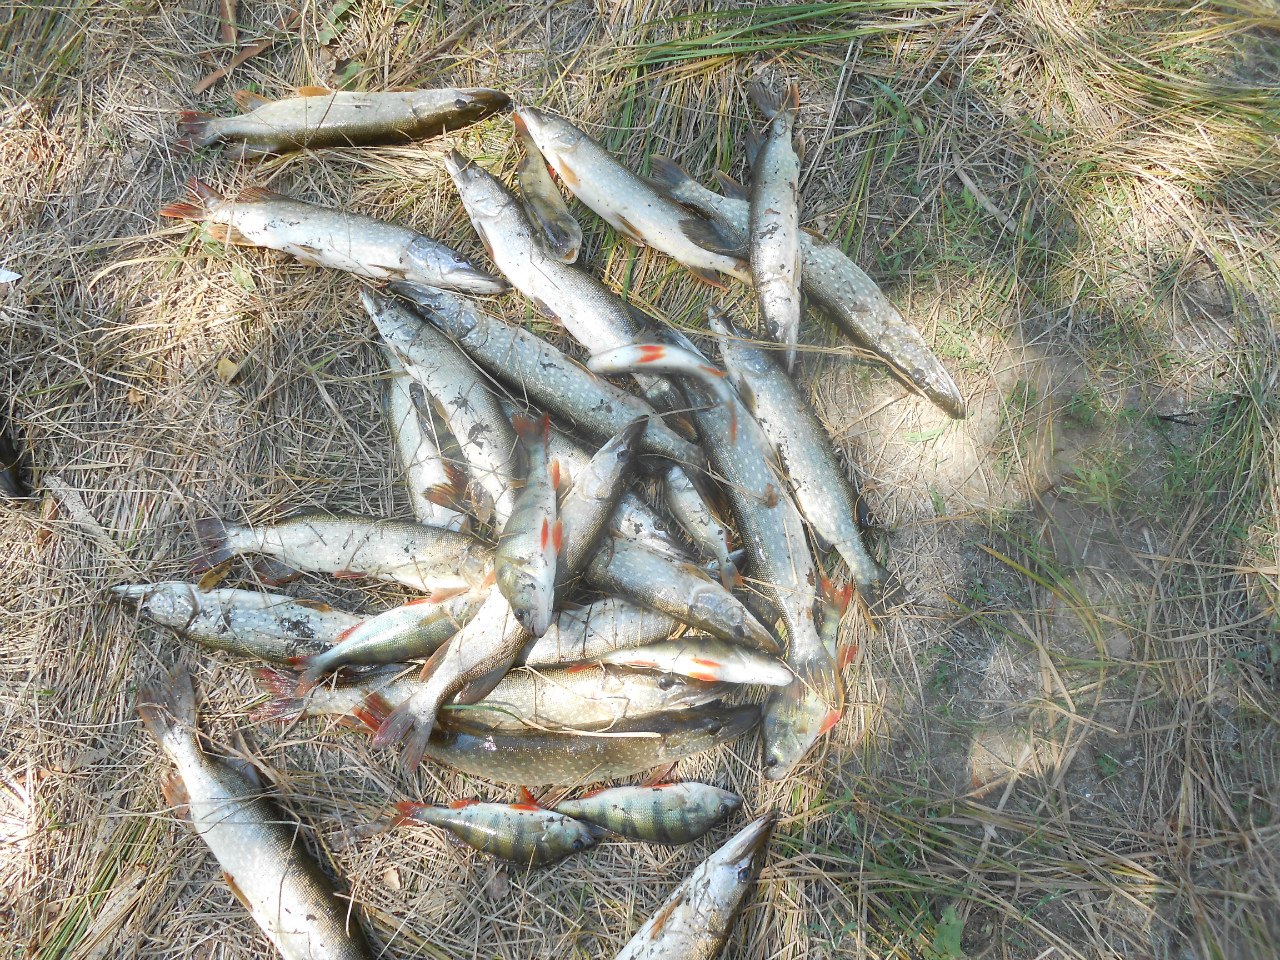 Как мы ездили на рыбалку в Астраханскую область Ахутба 2013, Ашулук 2014, астраханские судаки, кот-обжора, рыбалка в жару 60С°